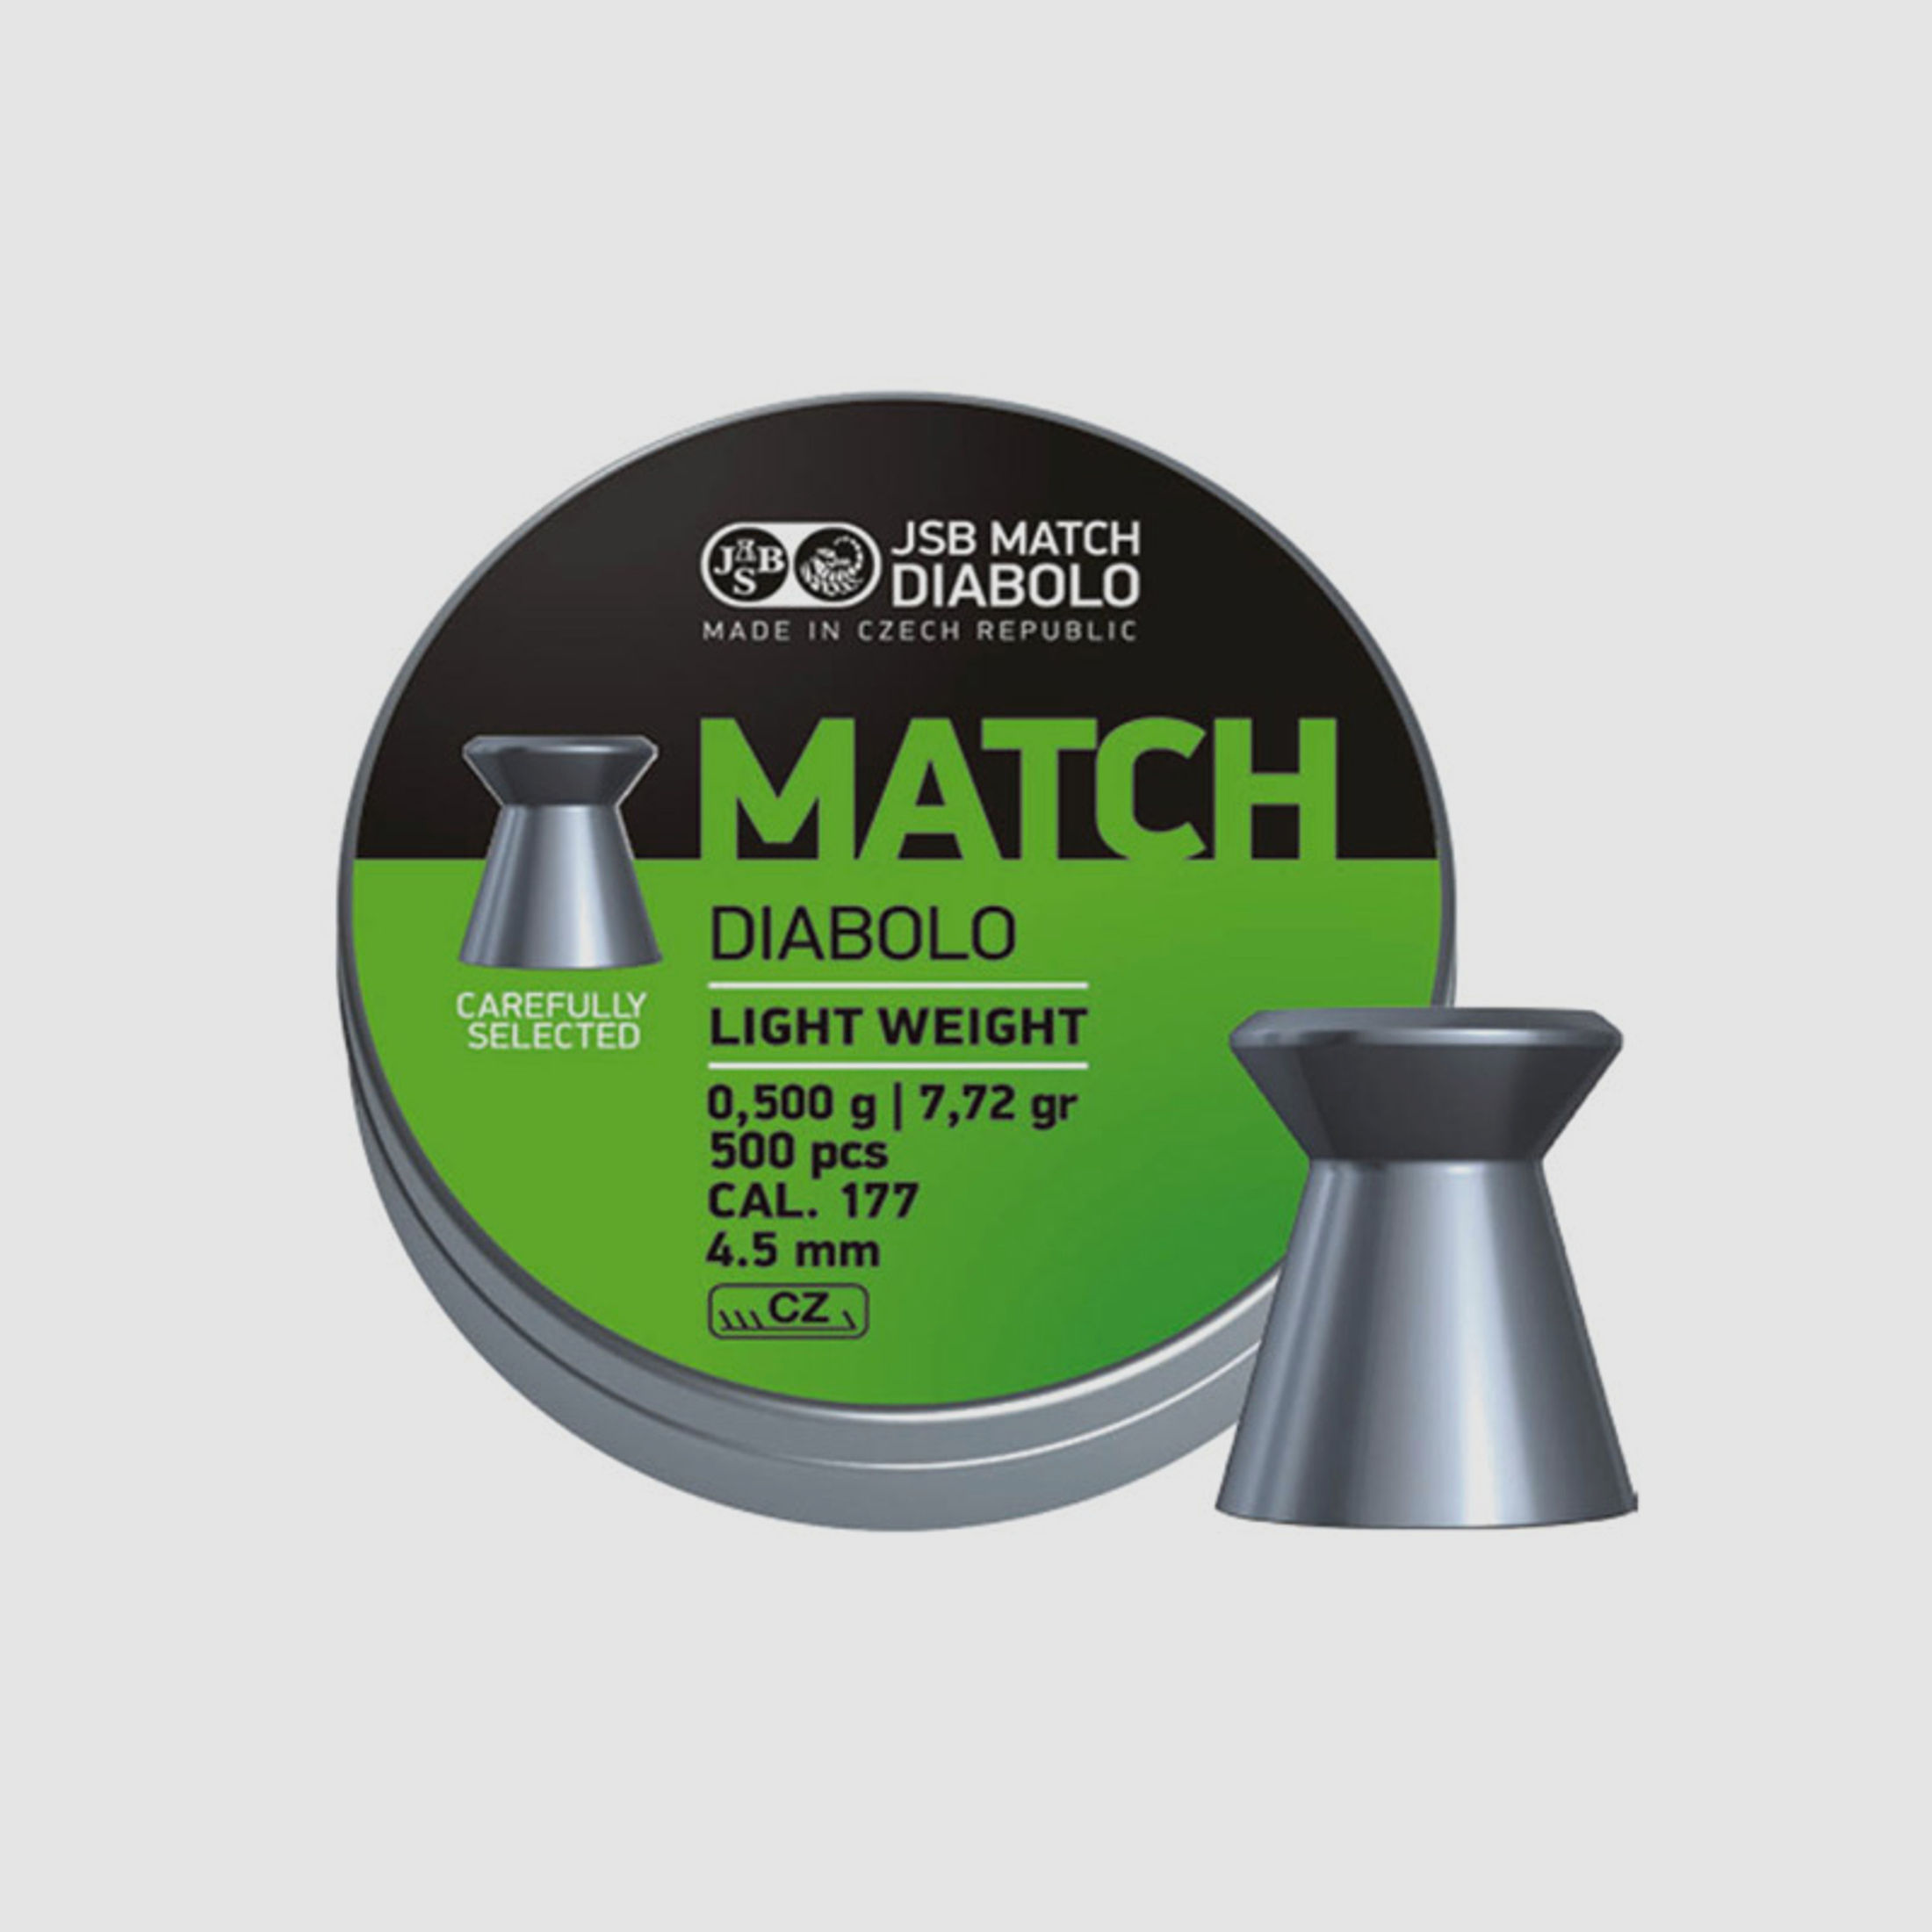 Flachkopf Diabolos JSB Match Light Kaliber 4,5 mm 0,475 g glatt 500 StĂĽck